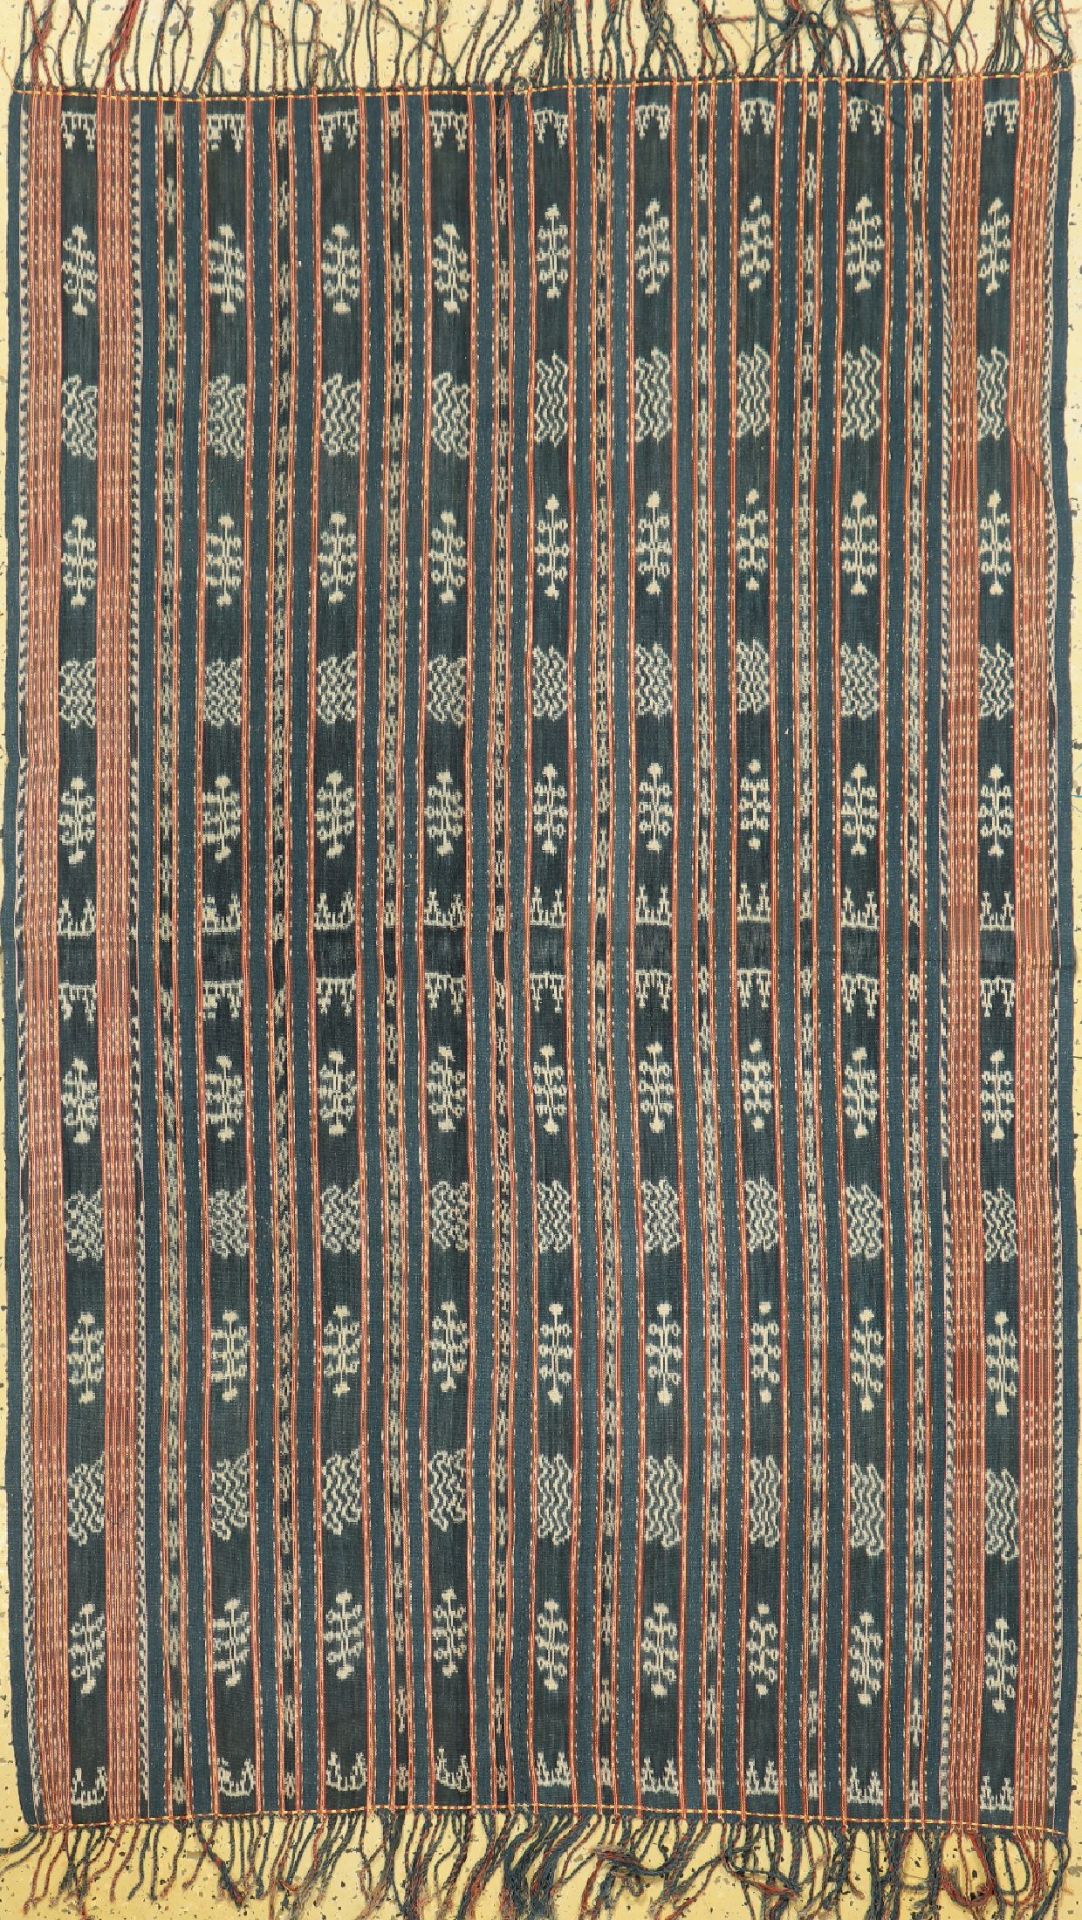 Indonesisches Textil,   Indonesien, um 1940/1950,